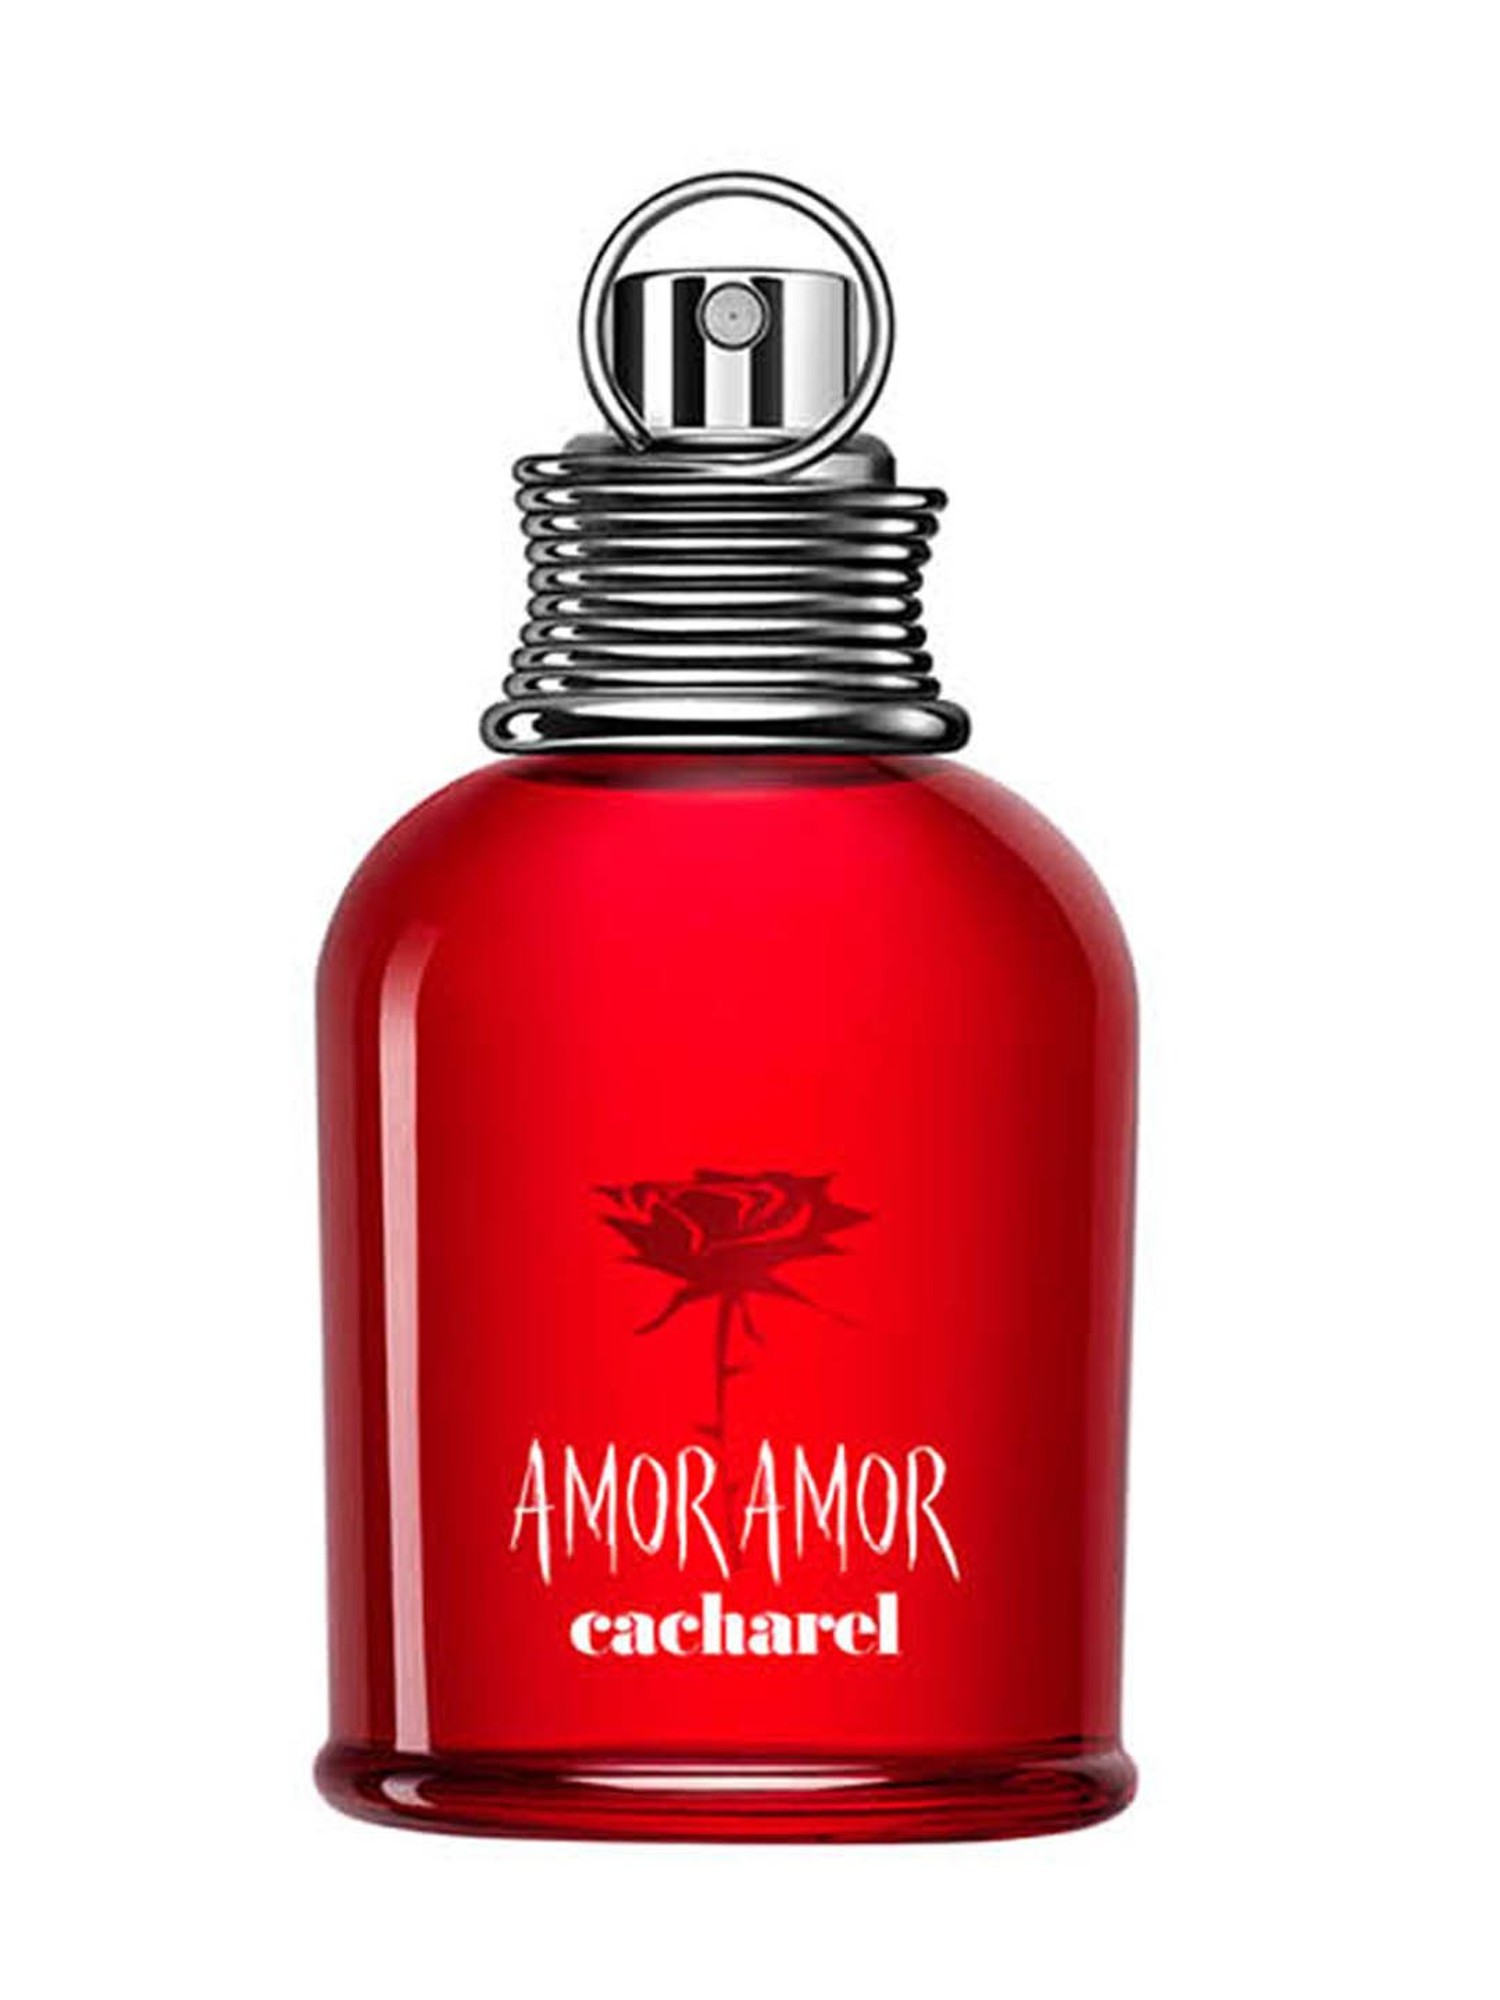 Share 70+ amor amor perfume gift set best